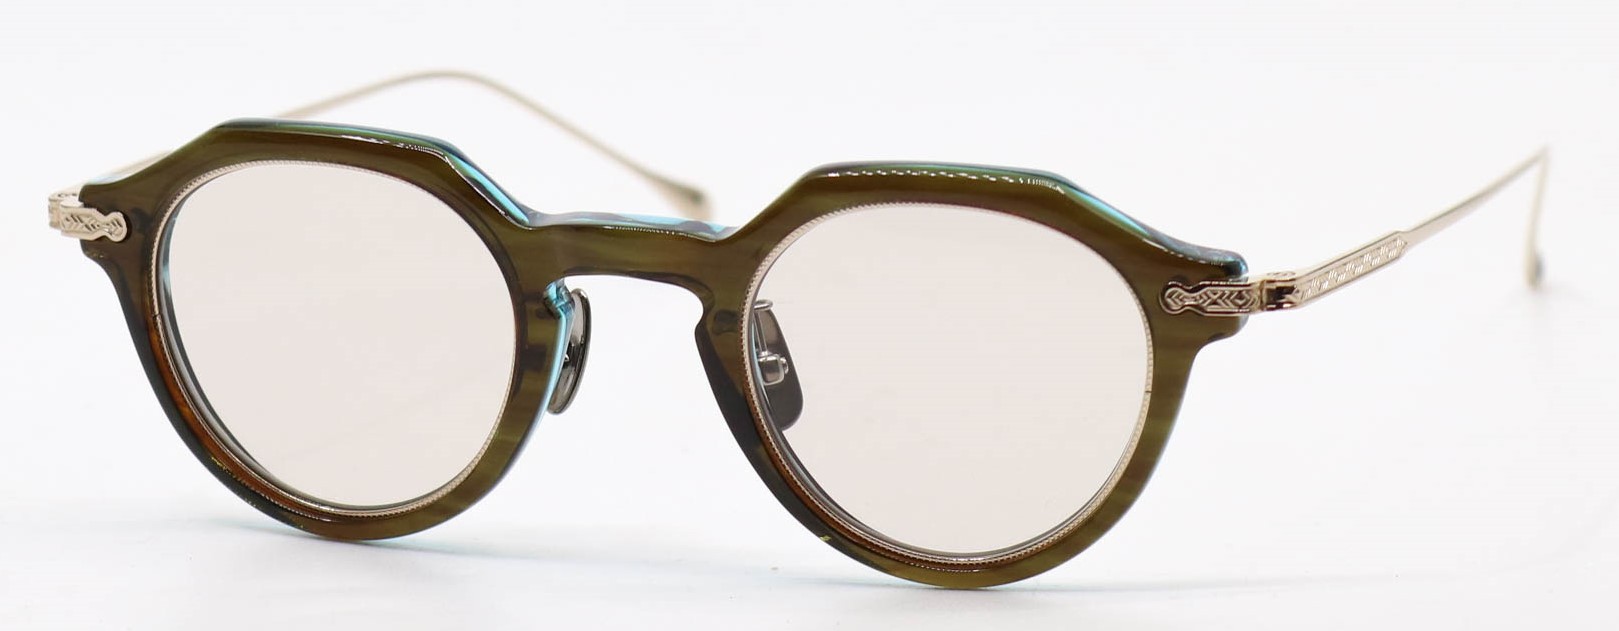 眼鏡のカラータイプC-3 BrownSasa-Green/Gold